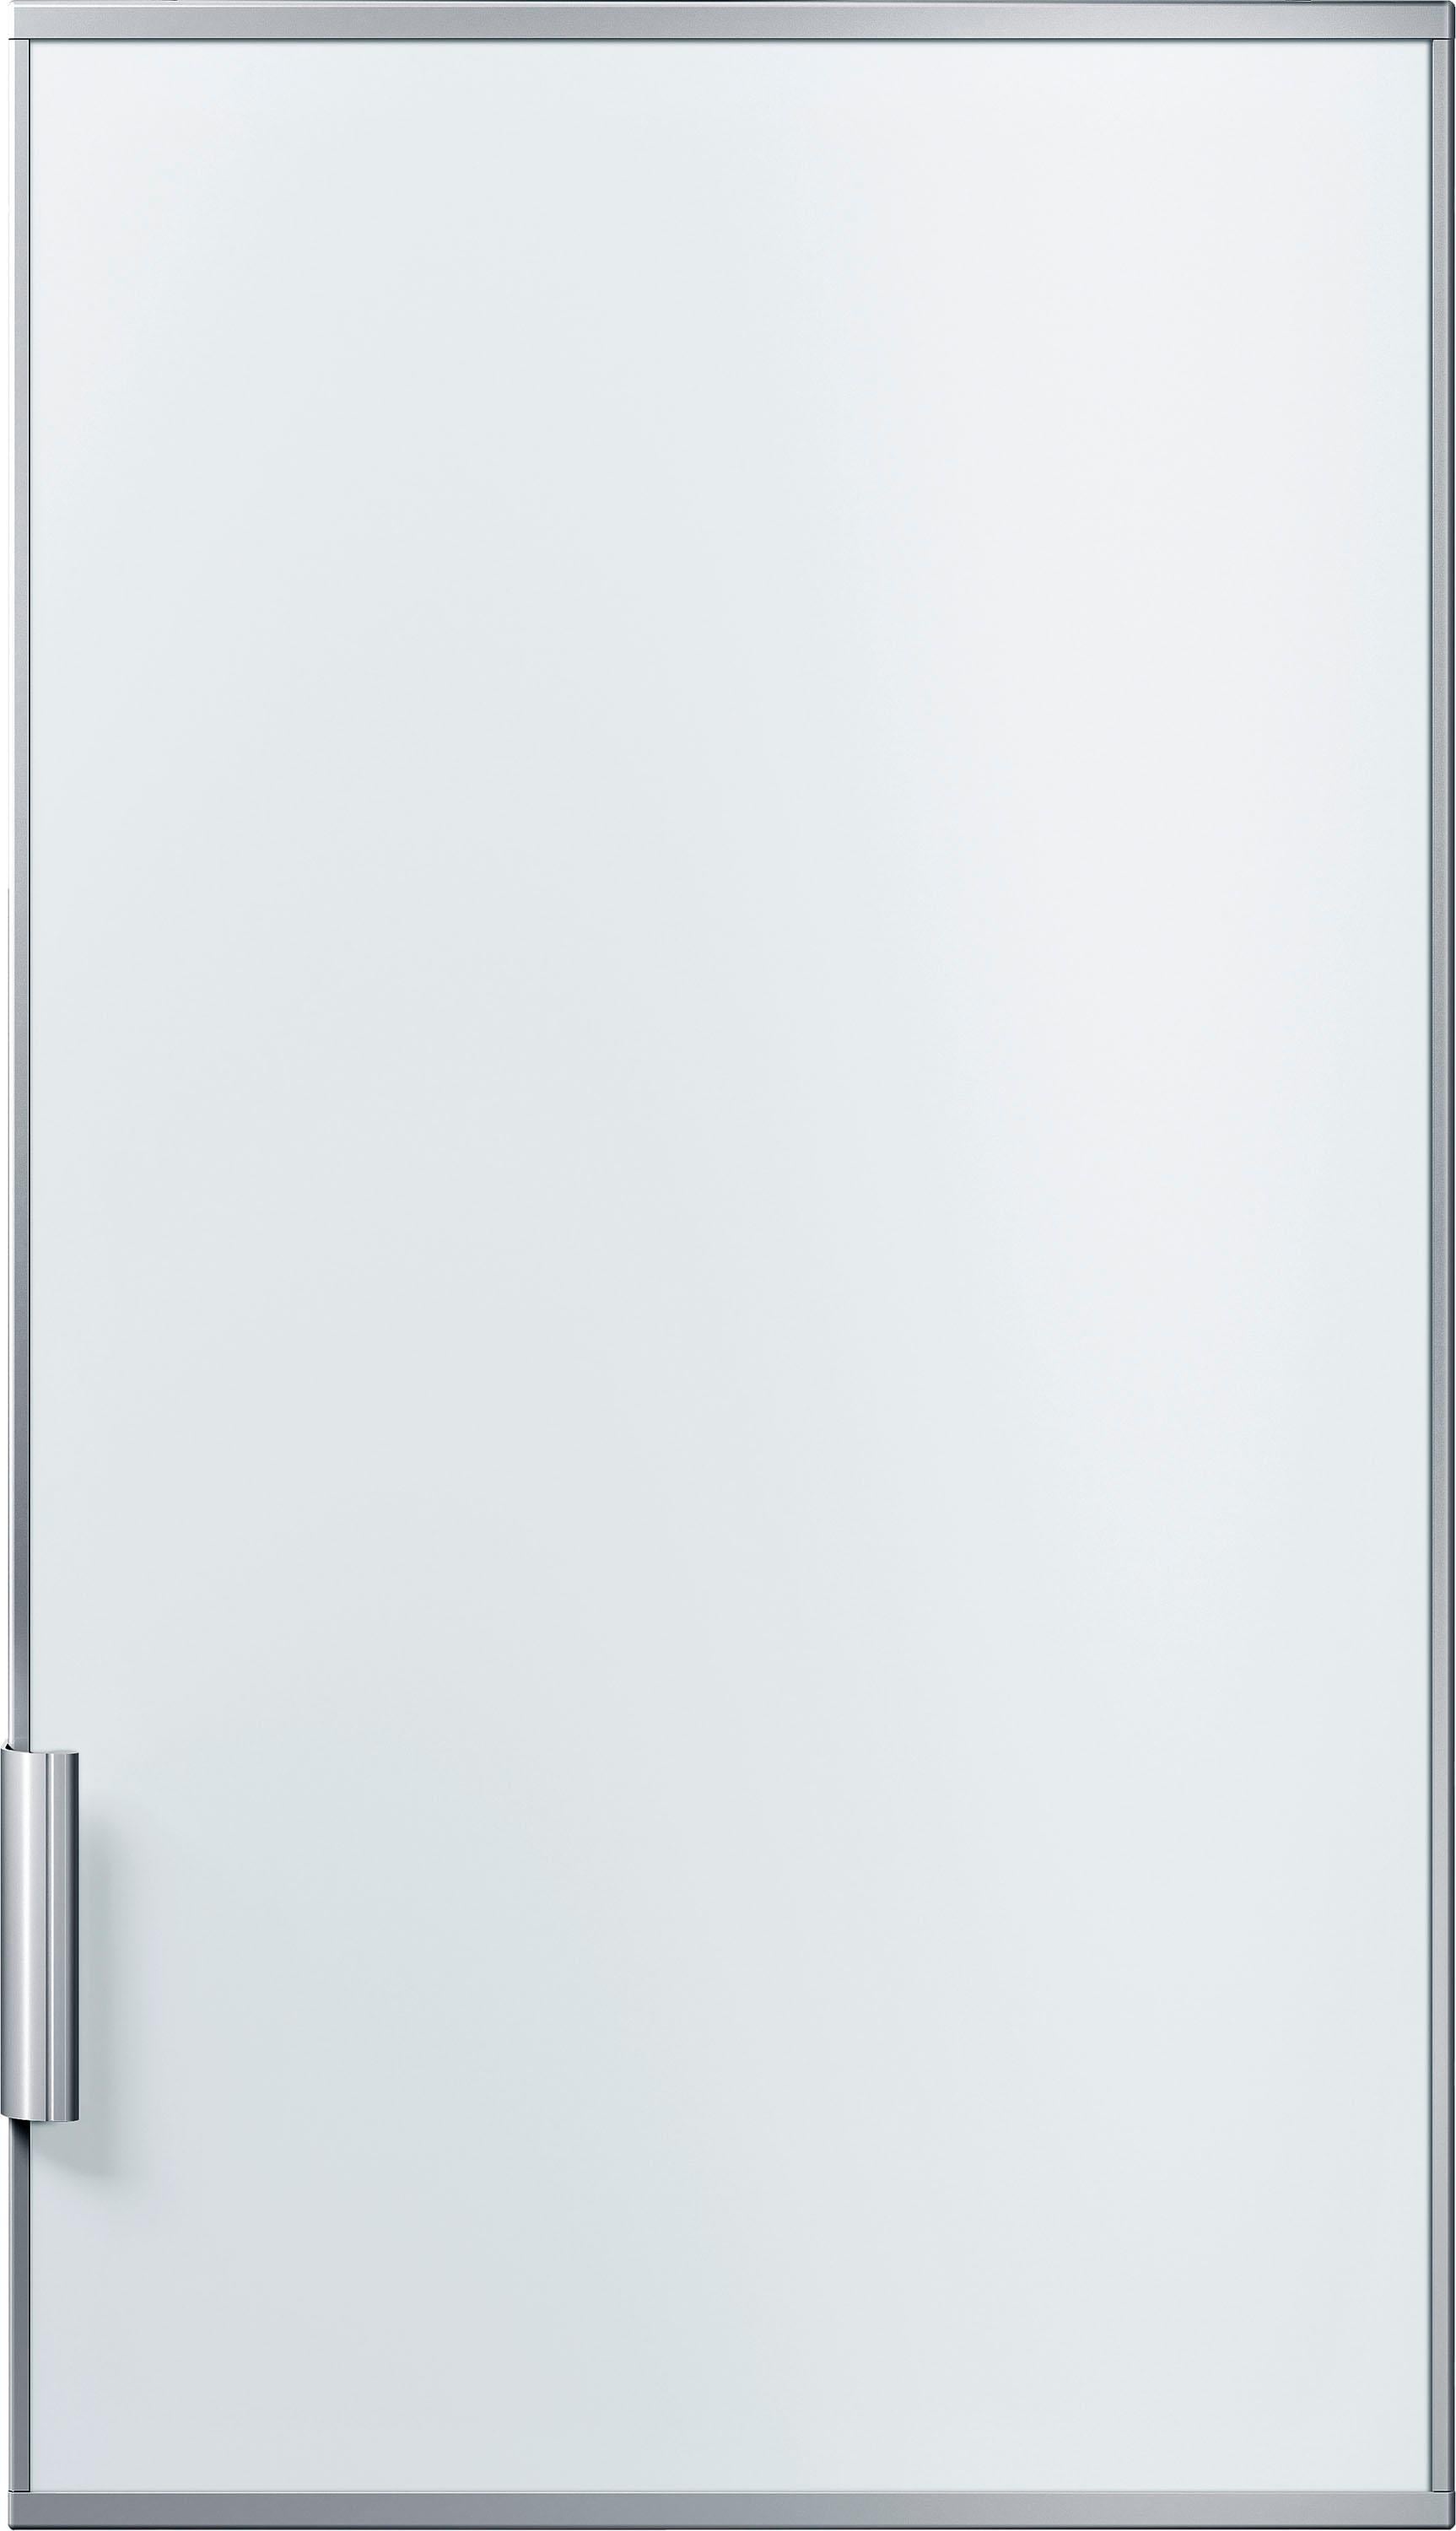 BOSCH Kühlschrankfront »KFZ30AX0«